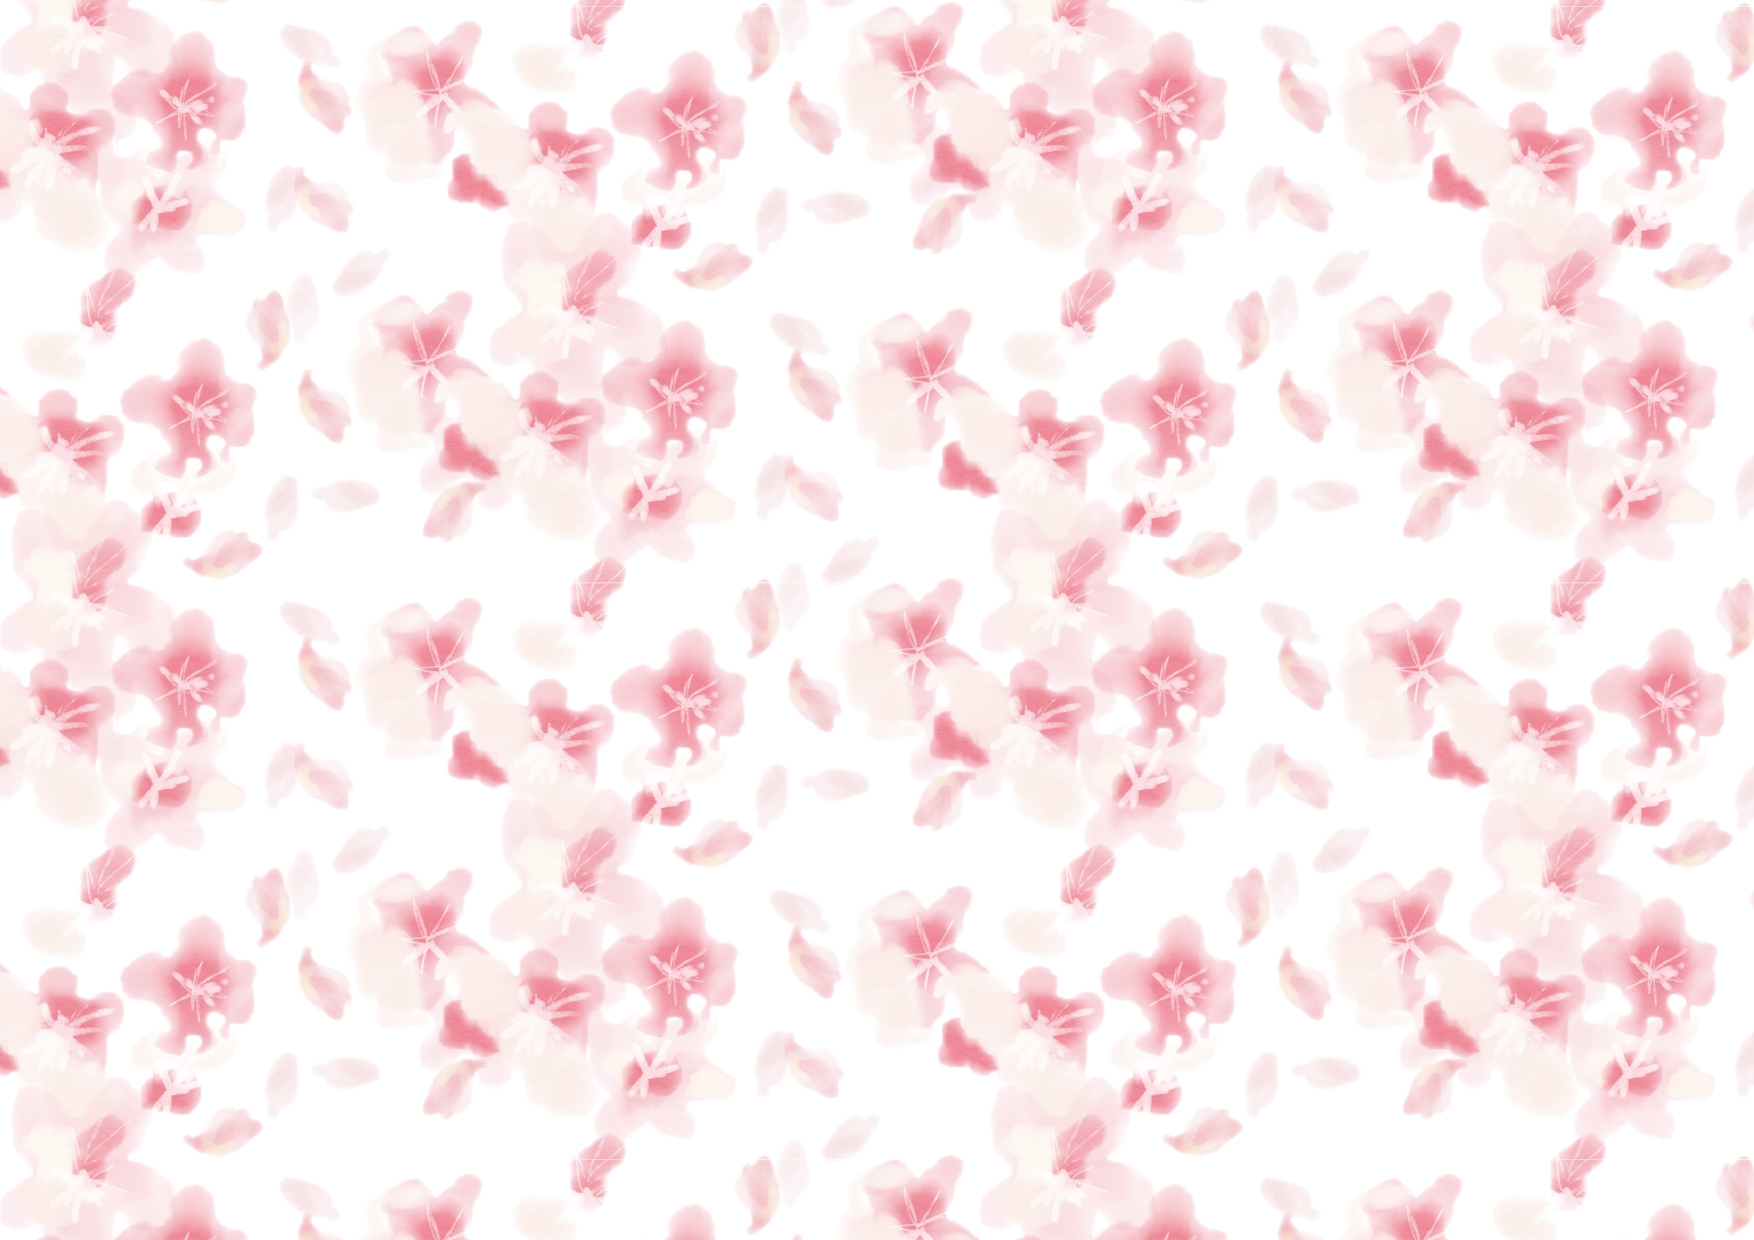 可愛いイラスト無料 背景 水彩 桜吹雪 公式 イラストダウンロード